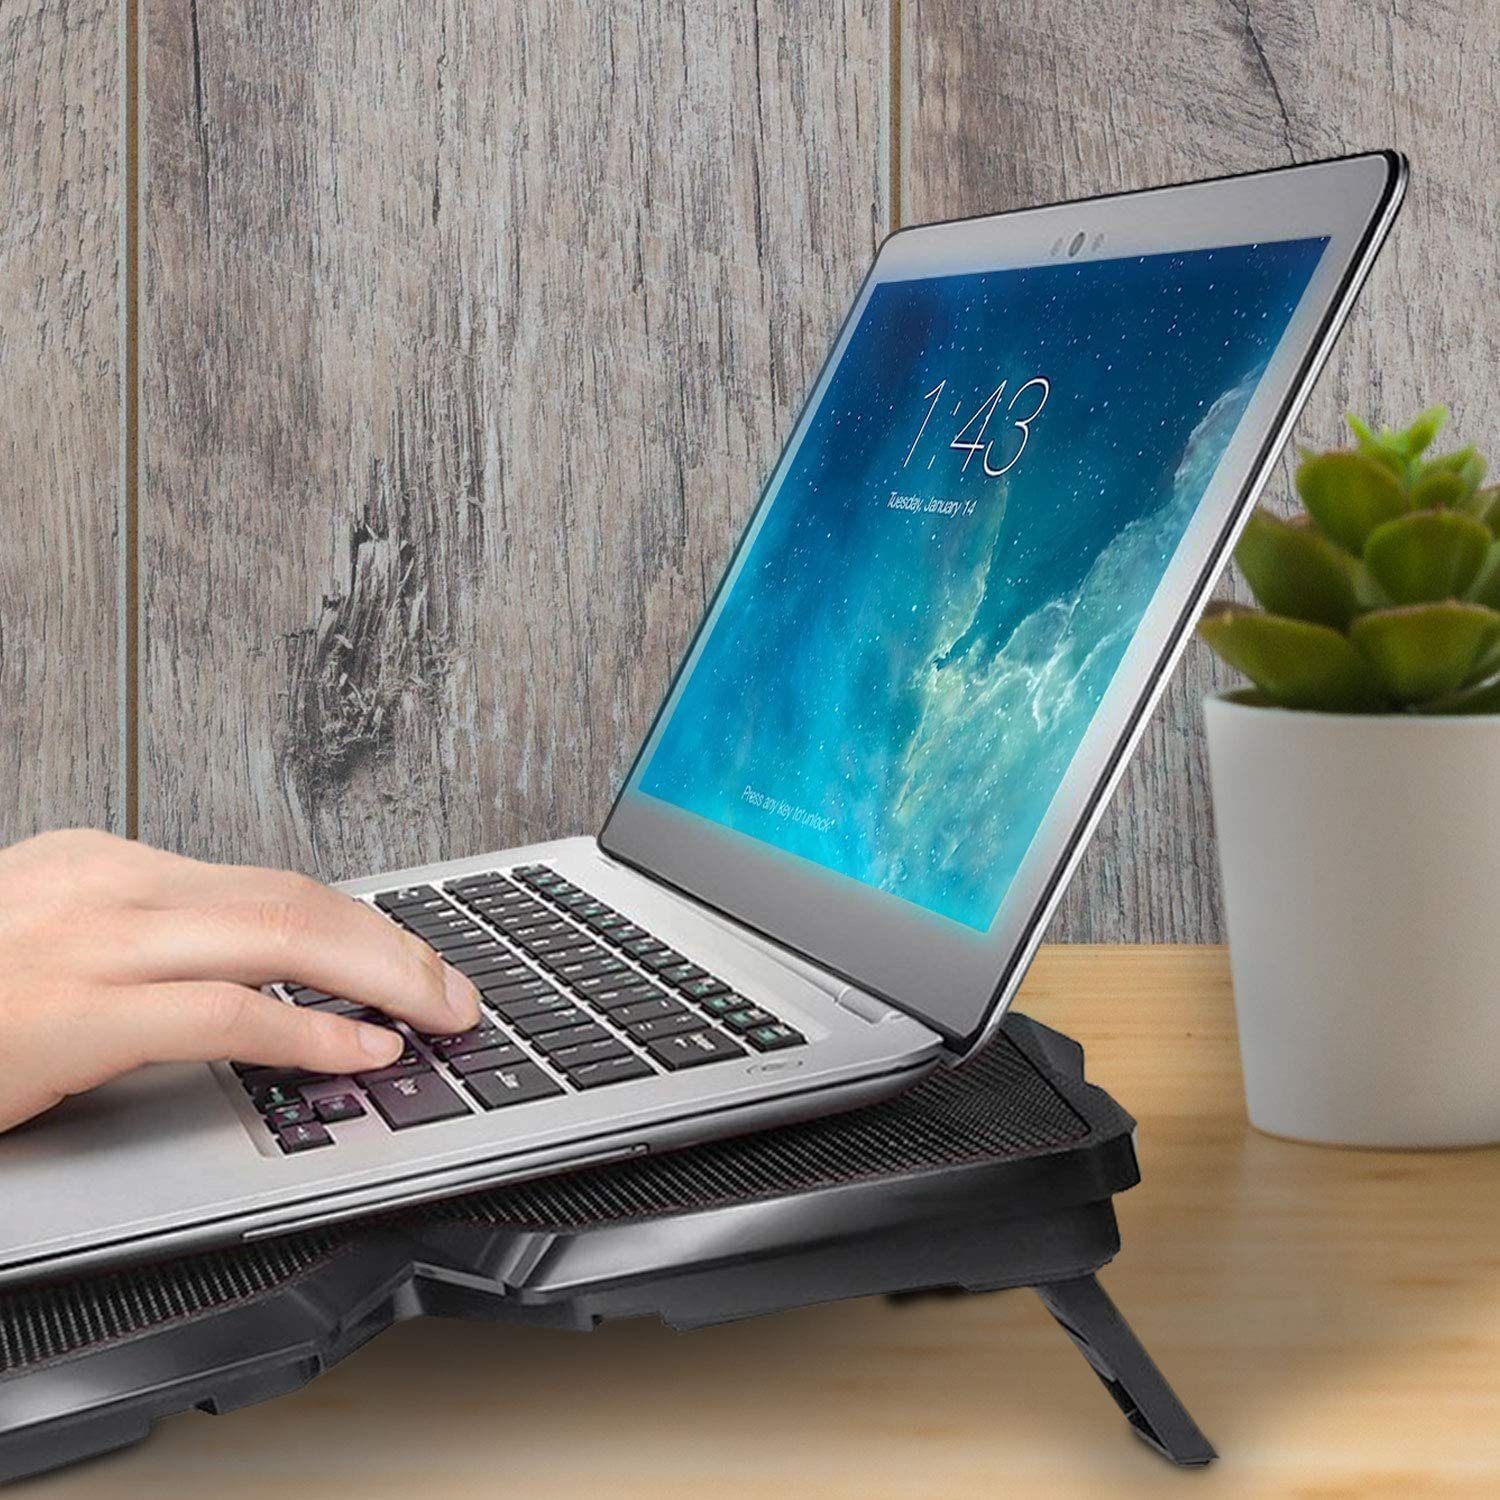 KLIM Notebook-Kühler Wind, Laptop-Kühlpad – Kühlventilator schnelle Cyan leistungsstärkste der